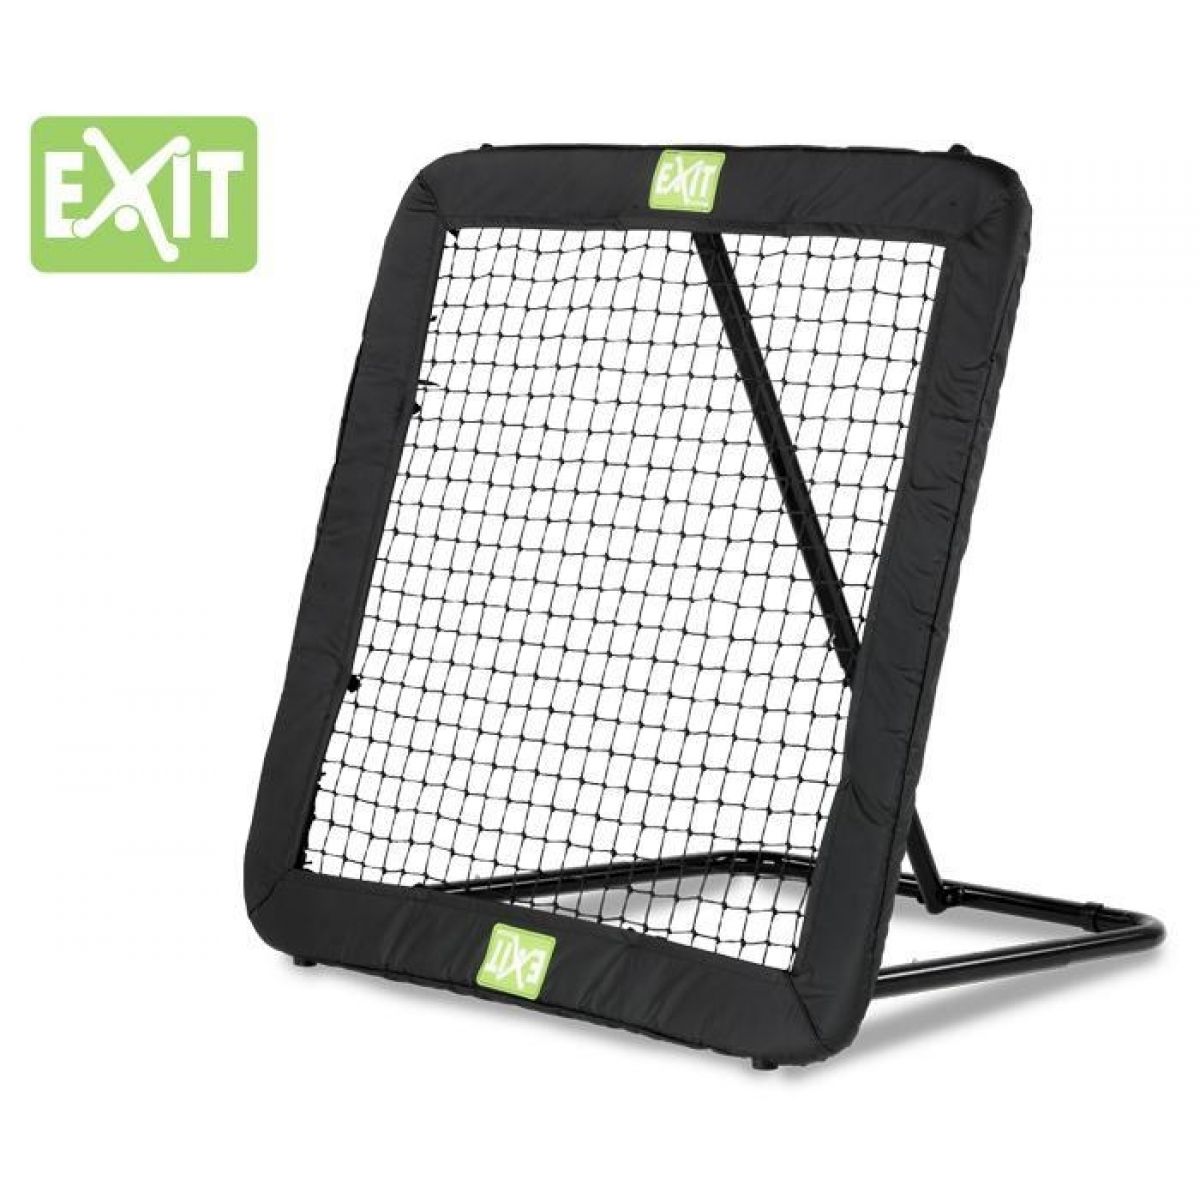 Exit Kickback Rebounder XL